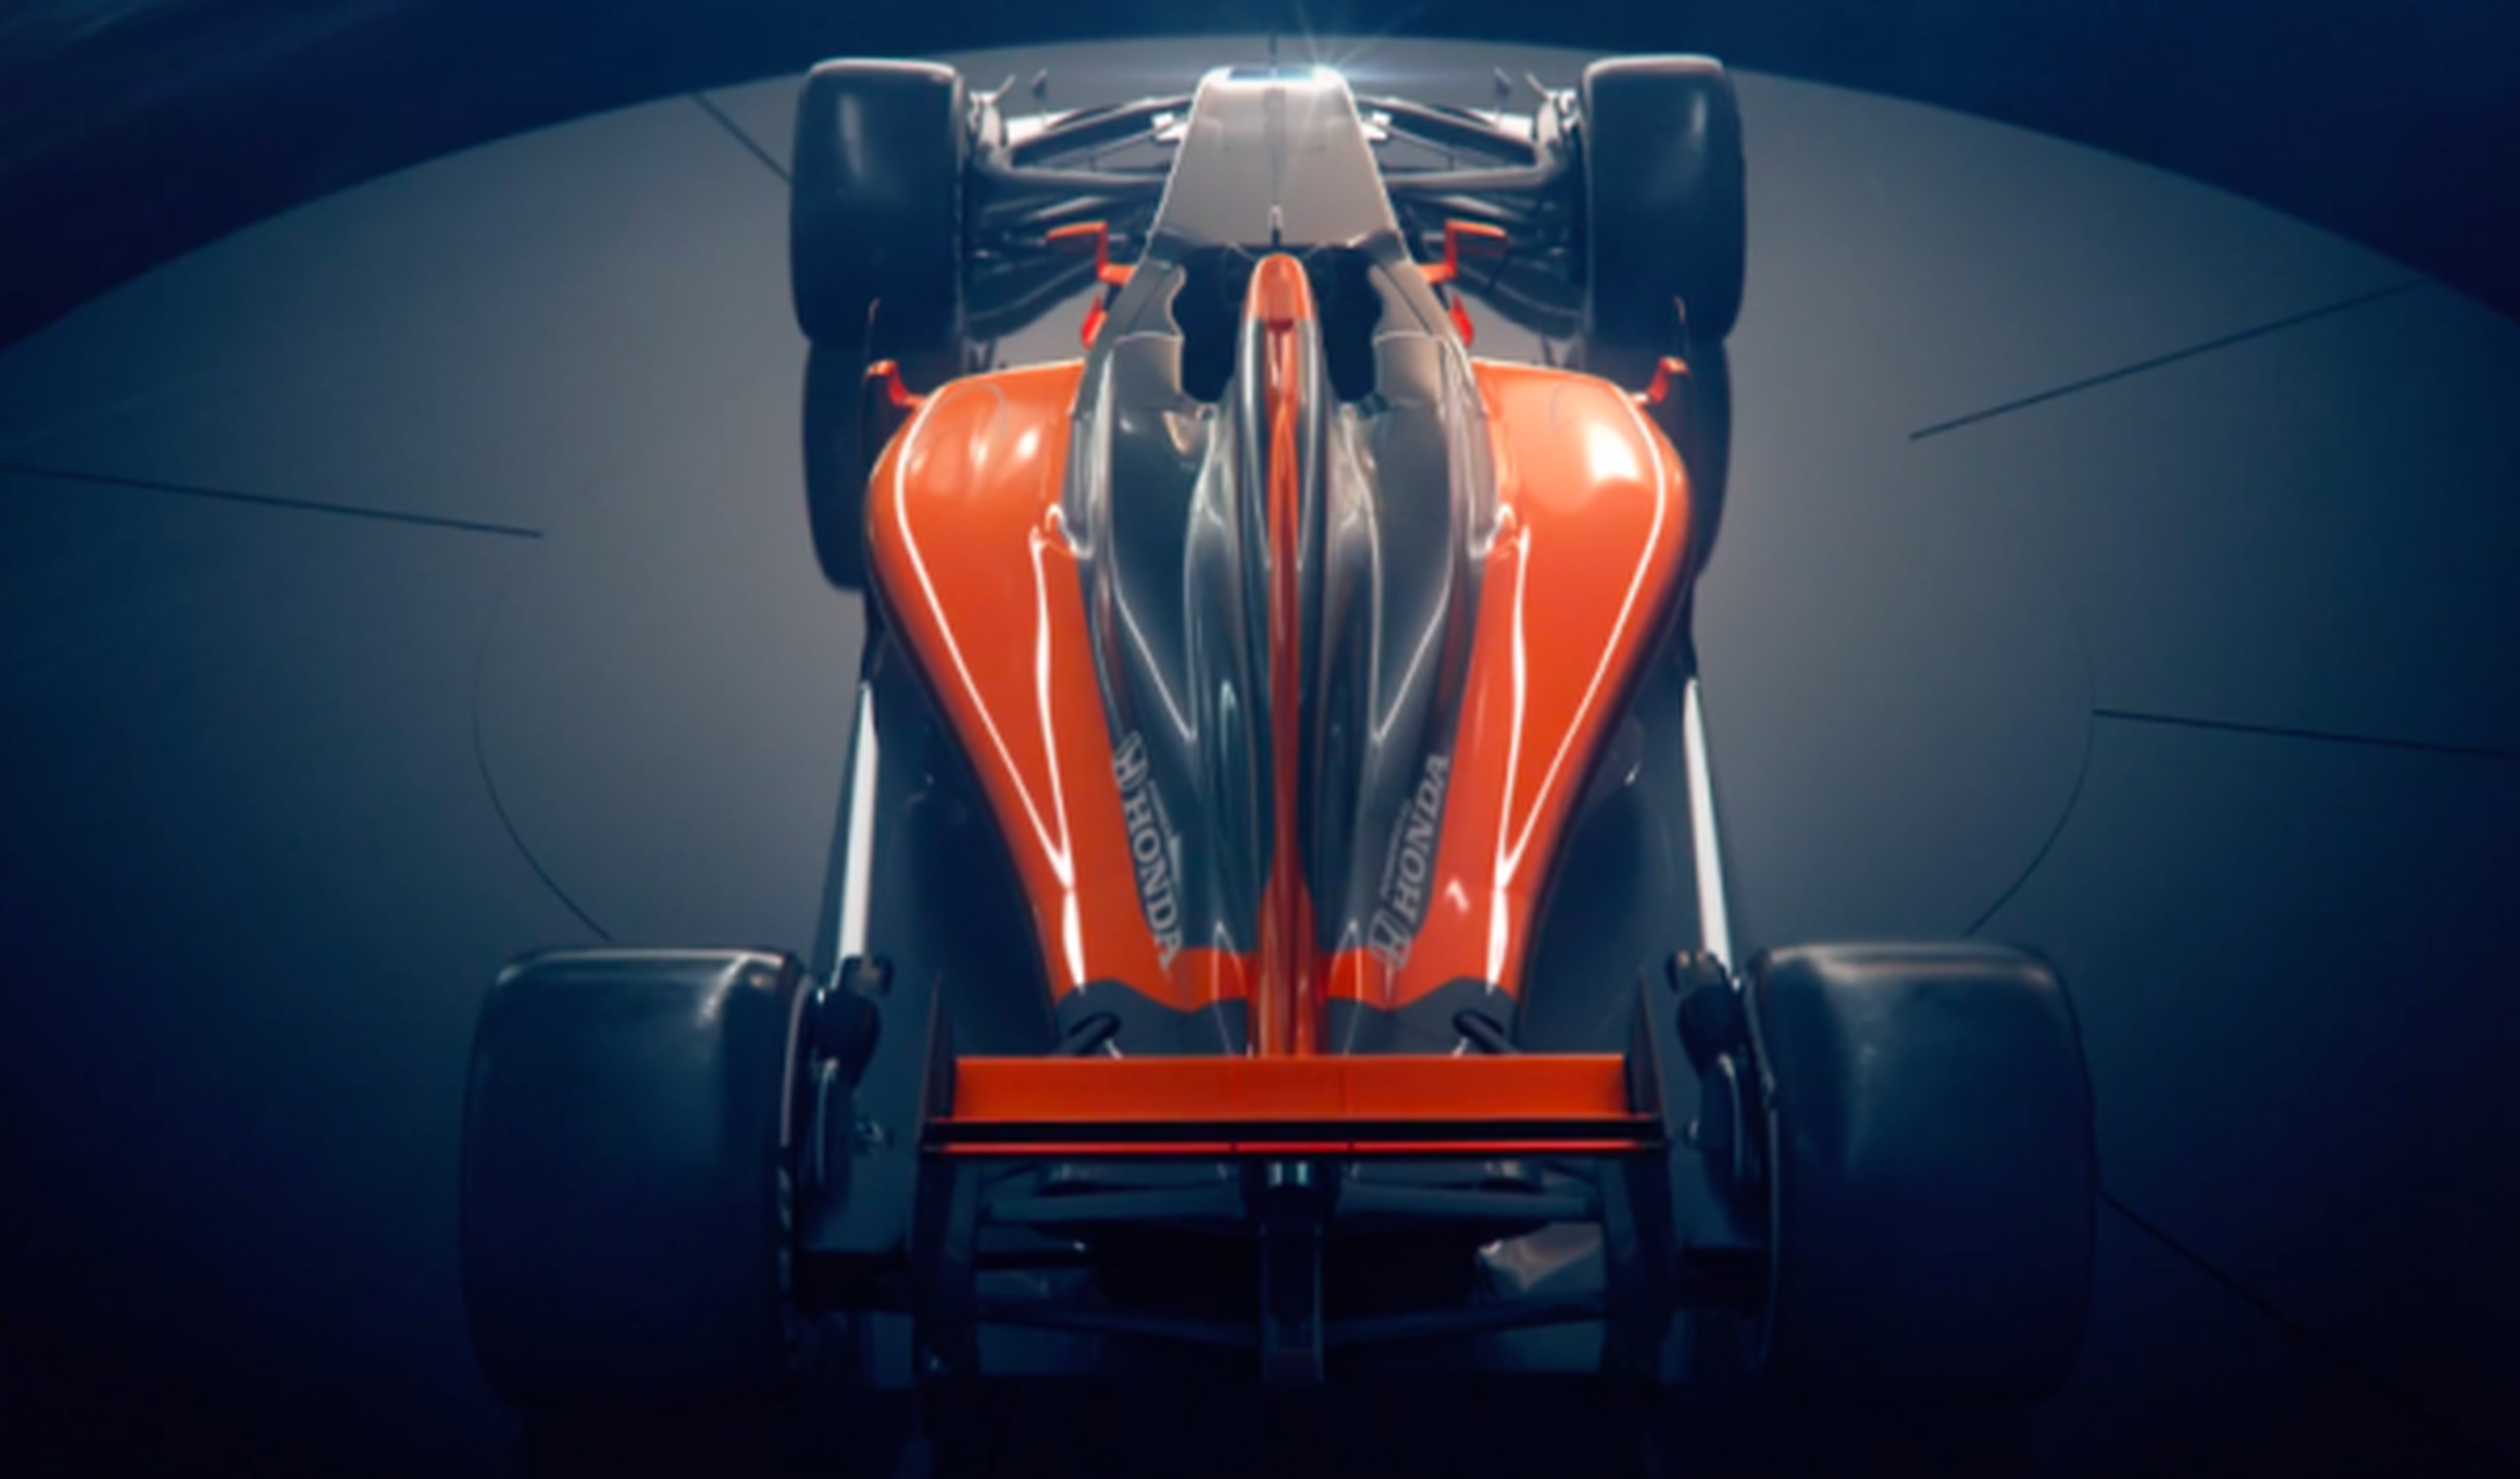 La verdad sobre el McLaren-Honda 'filtrado'